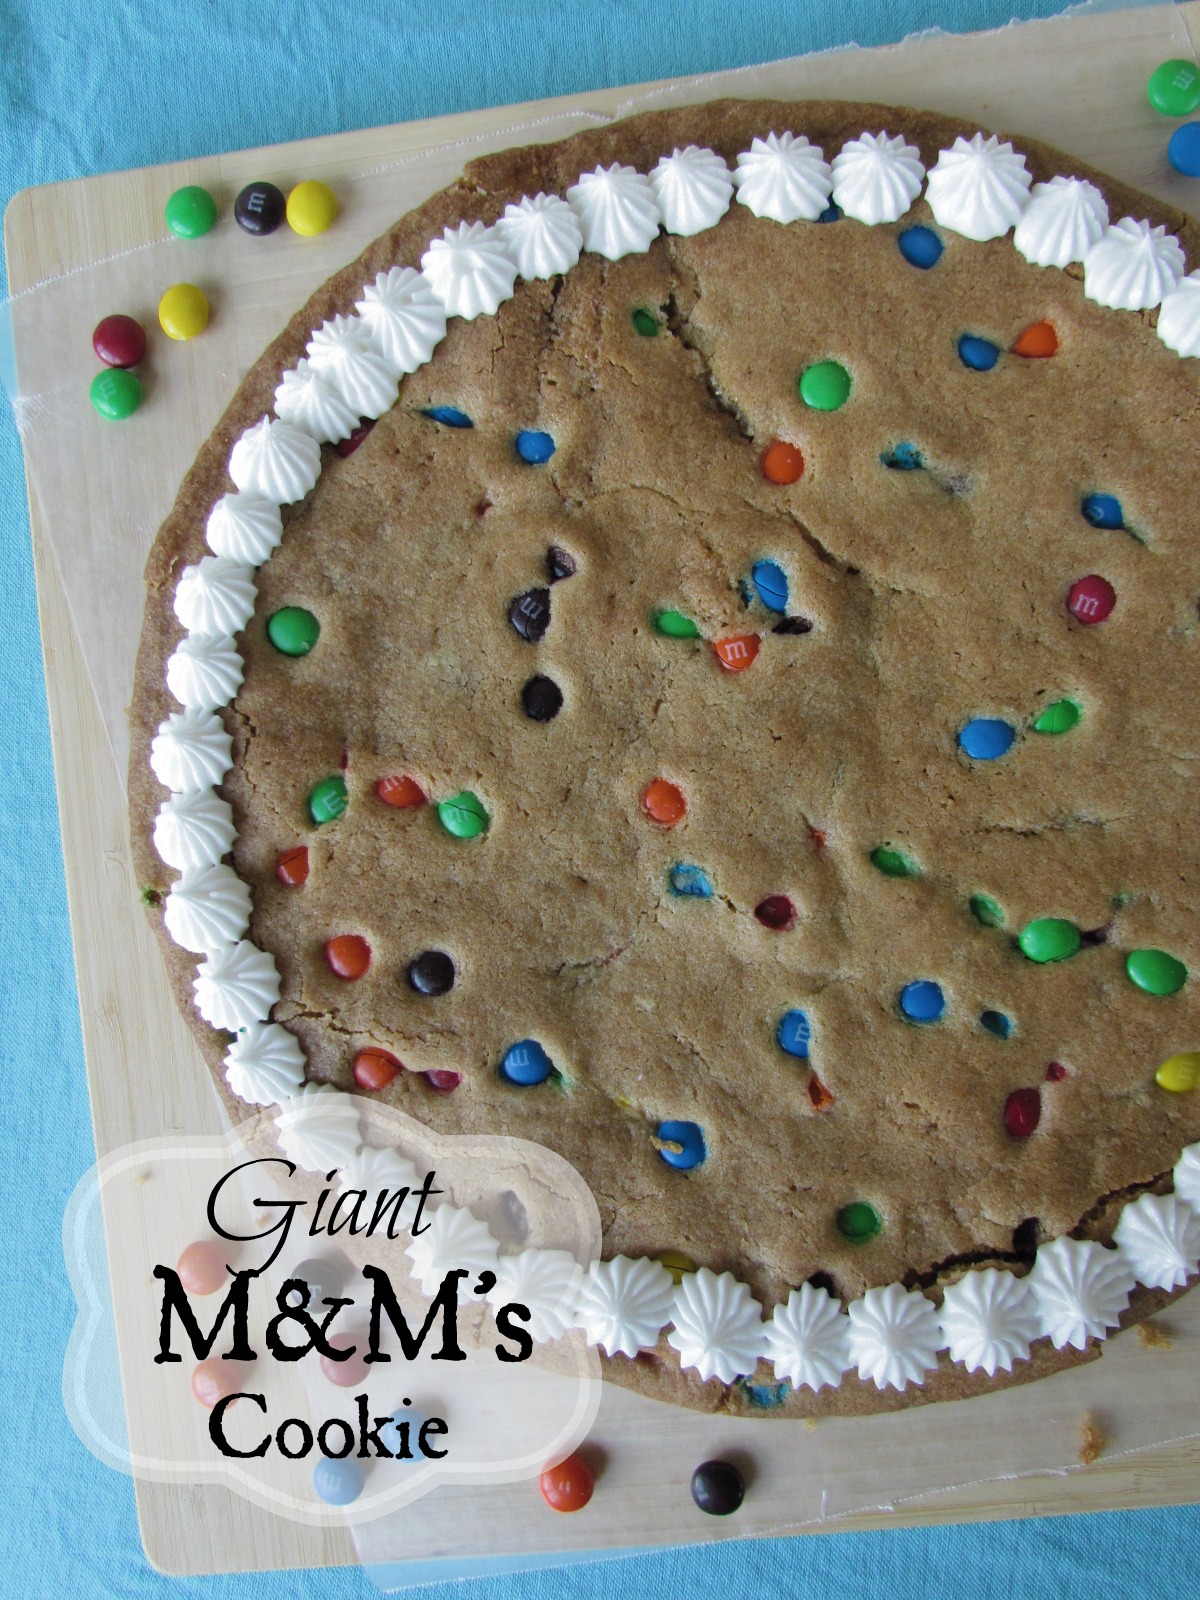 M&M's Cookie www.callmepmc.com